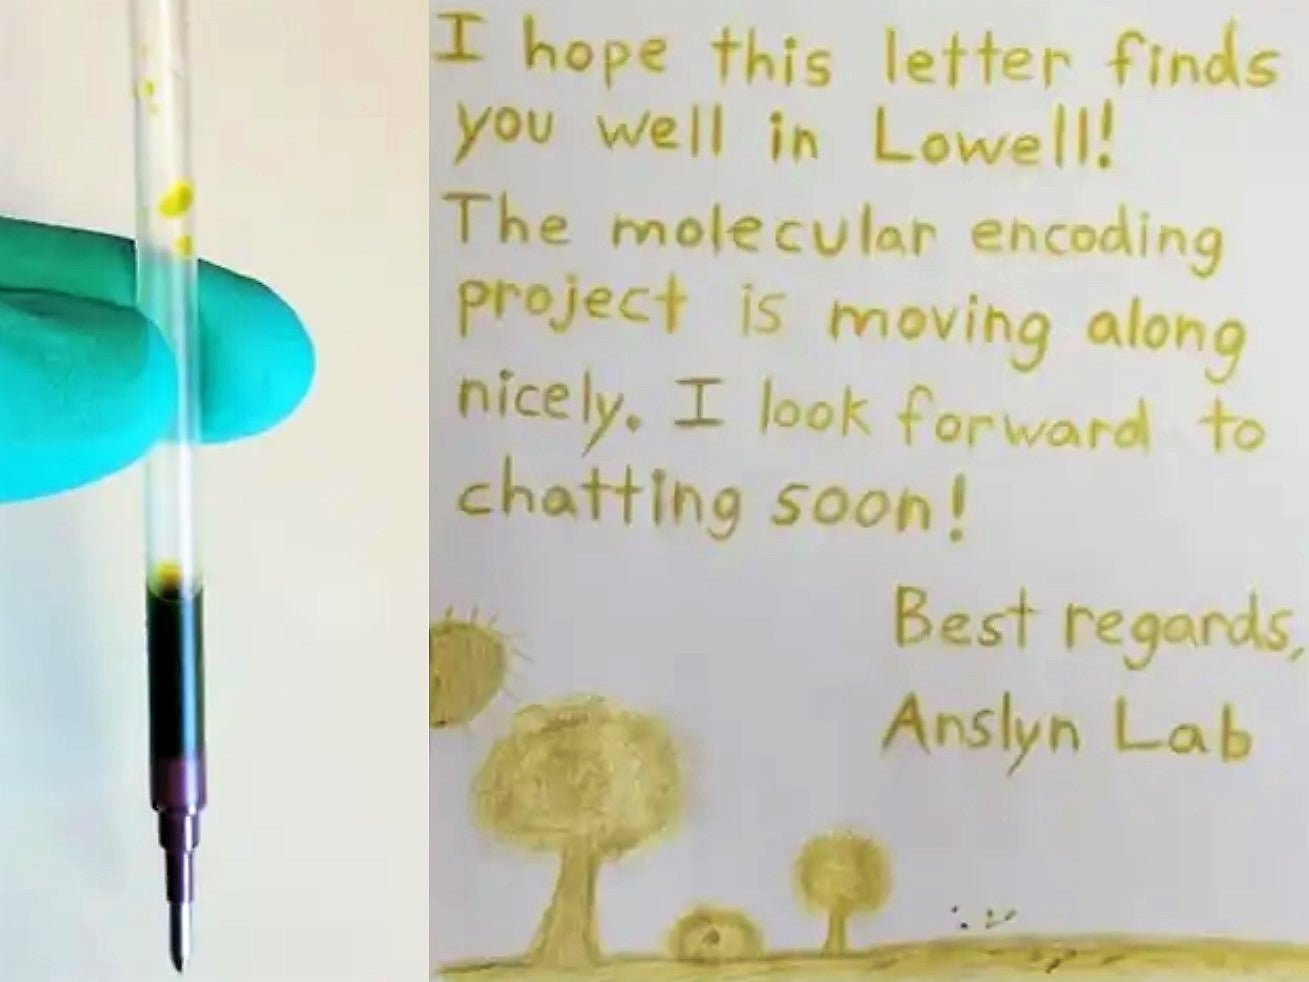 Una carta escrita con la tinta que contiene una clave de cifrado molecular